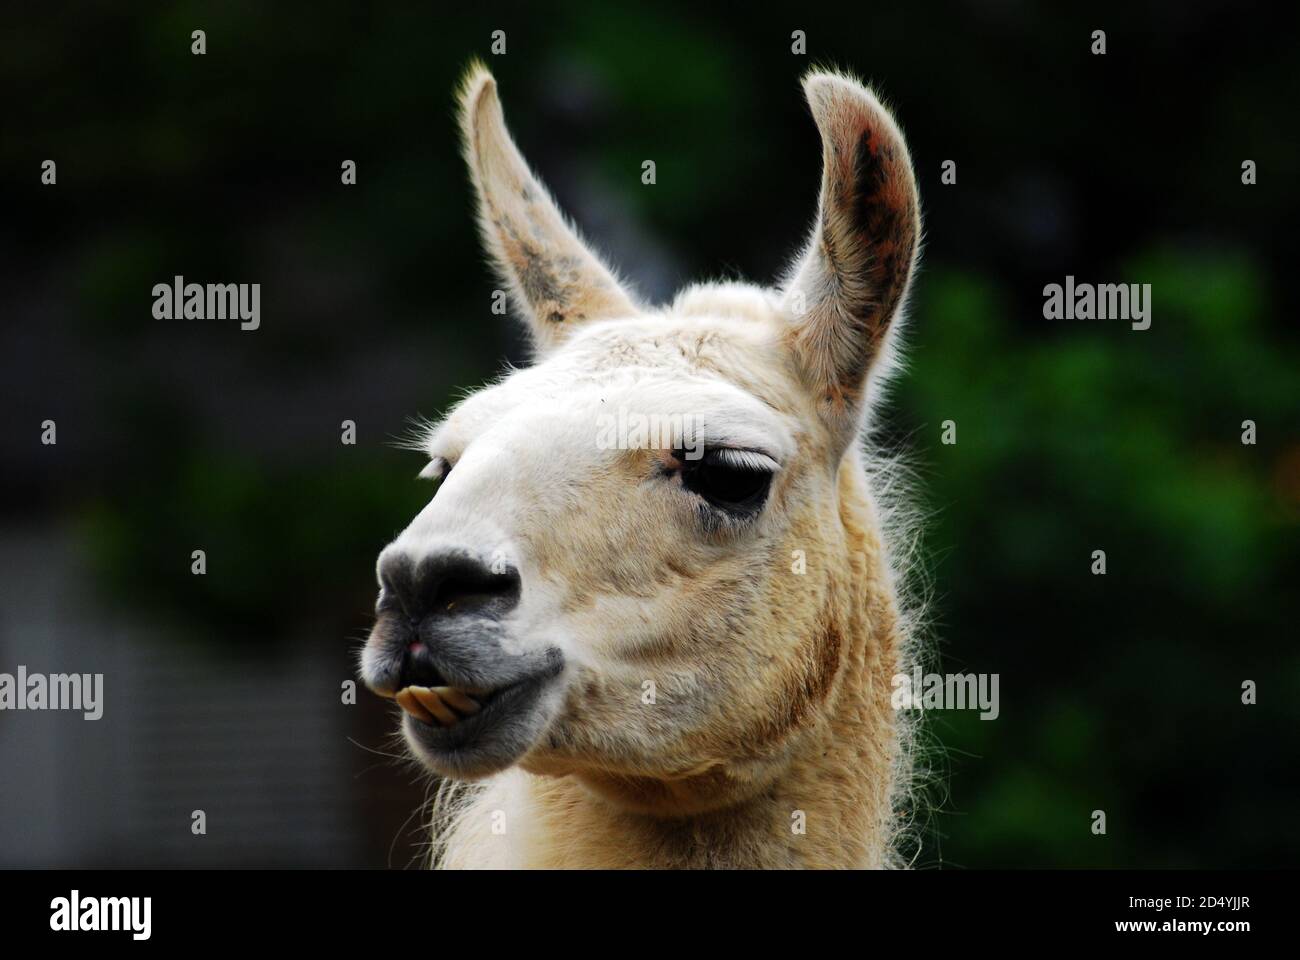 Weiße Llama (lama glama), Nahaufnahme Kopf, Ohren, Schnauze und Augen domestizierten südamerikanischen Kameliden weit verbreitet als Packtier & für seine Wolle und Fleisch verwendet Stockfoto